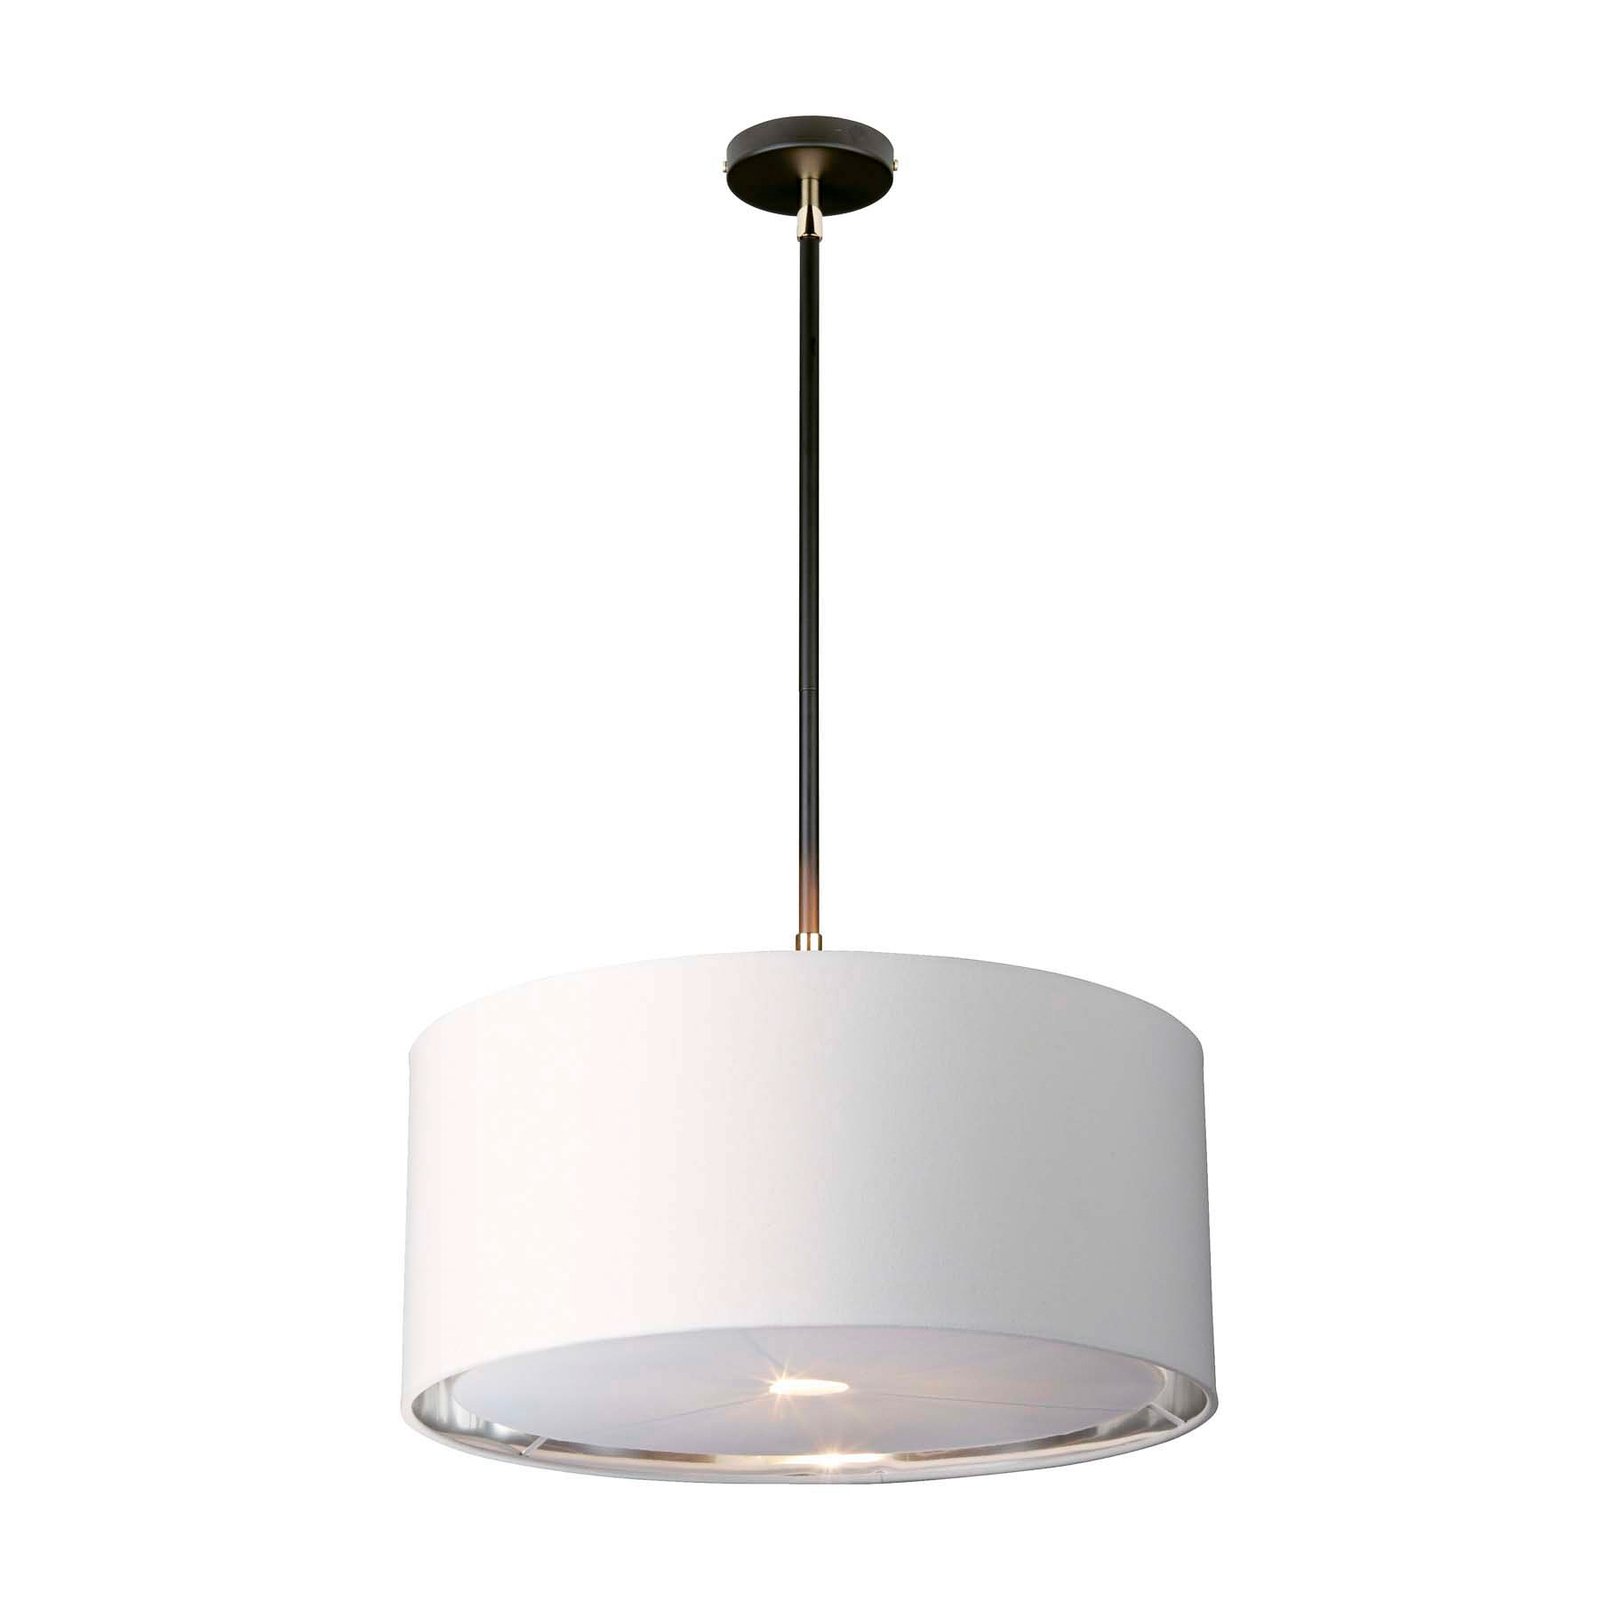 Balance pendant light, black/nickel polished, white lampshade